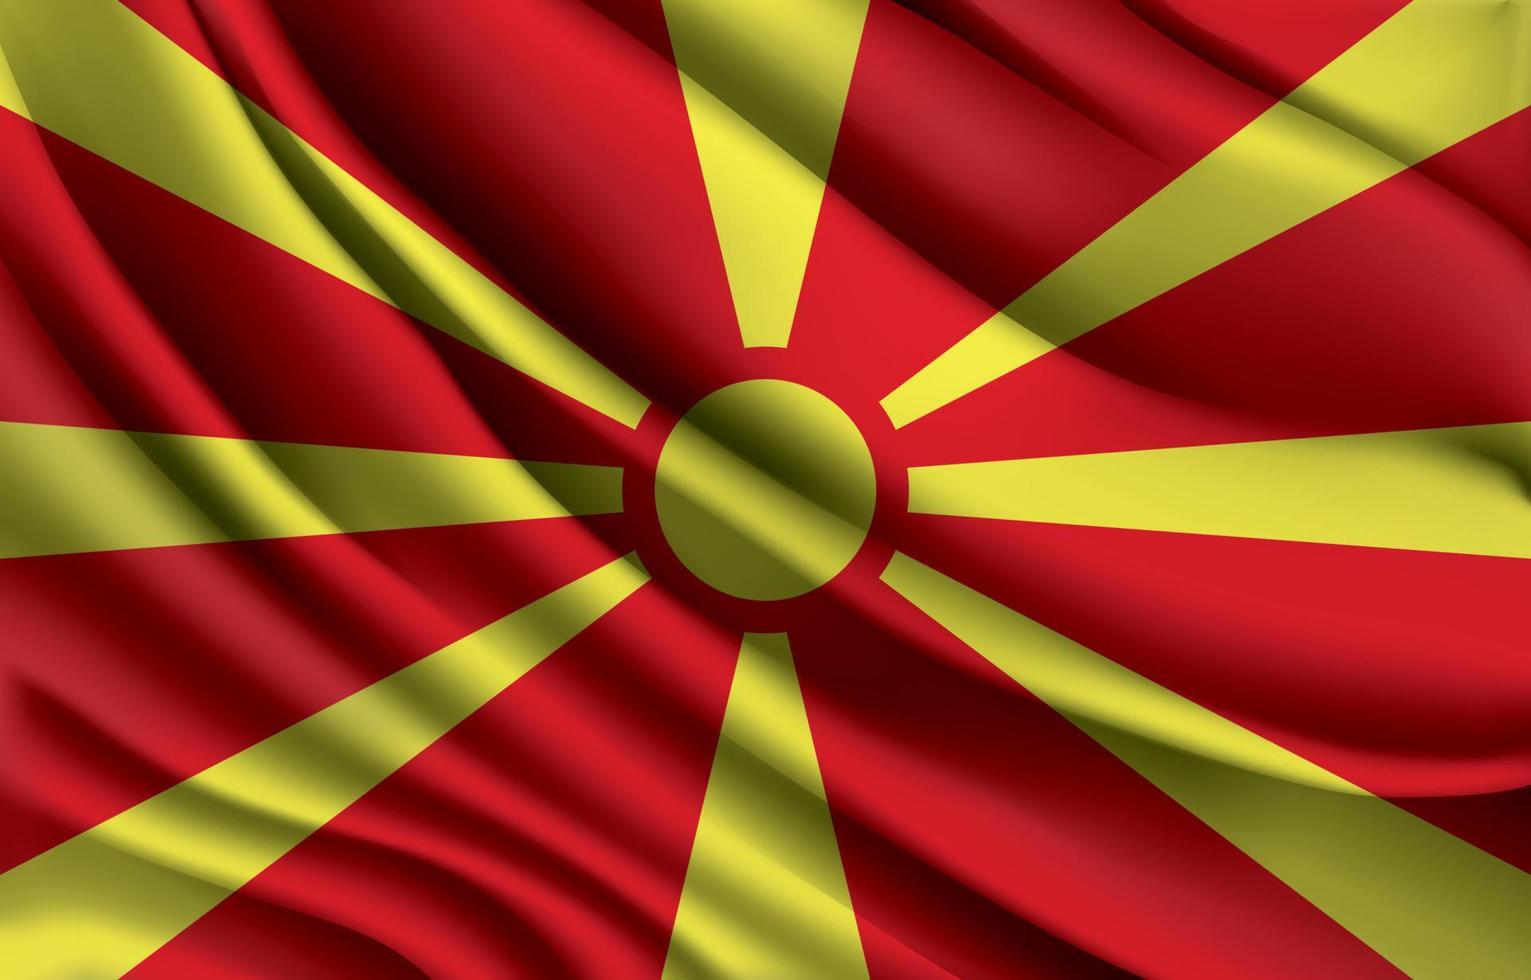 north macedonia national flag waving realistic vector illustration